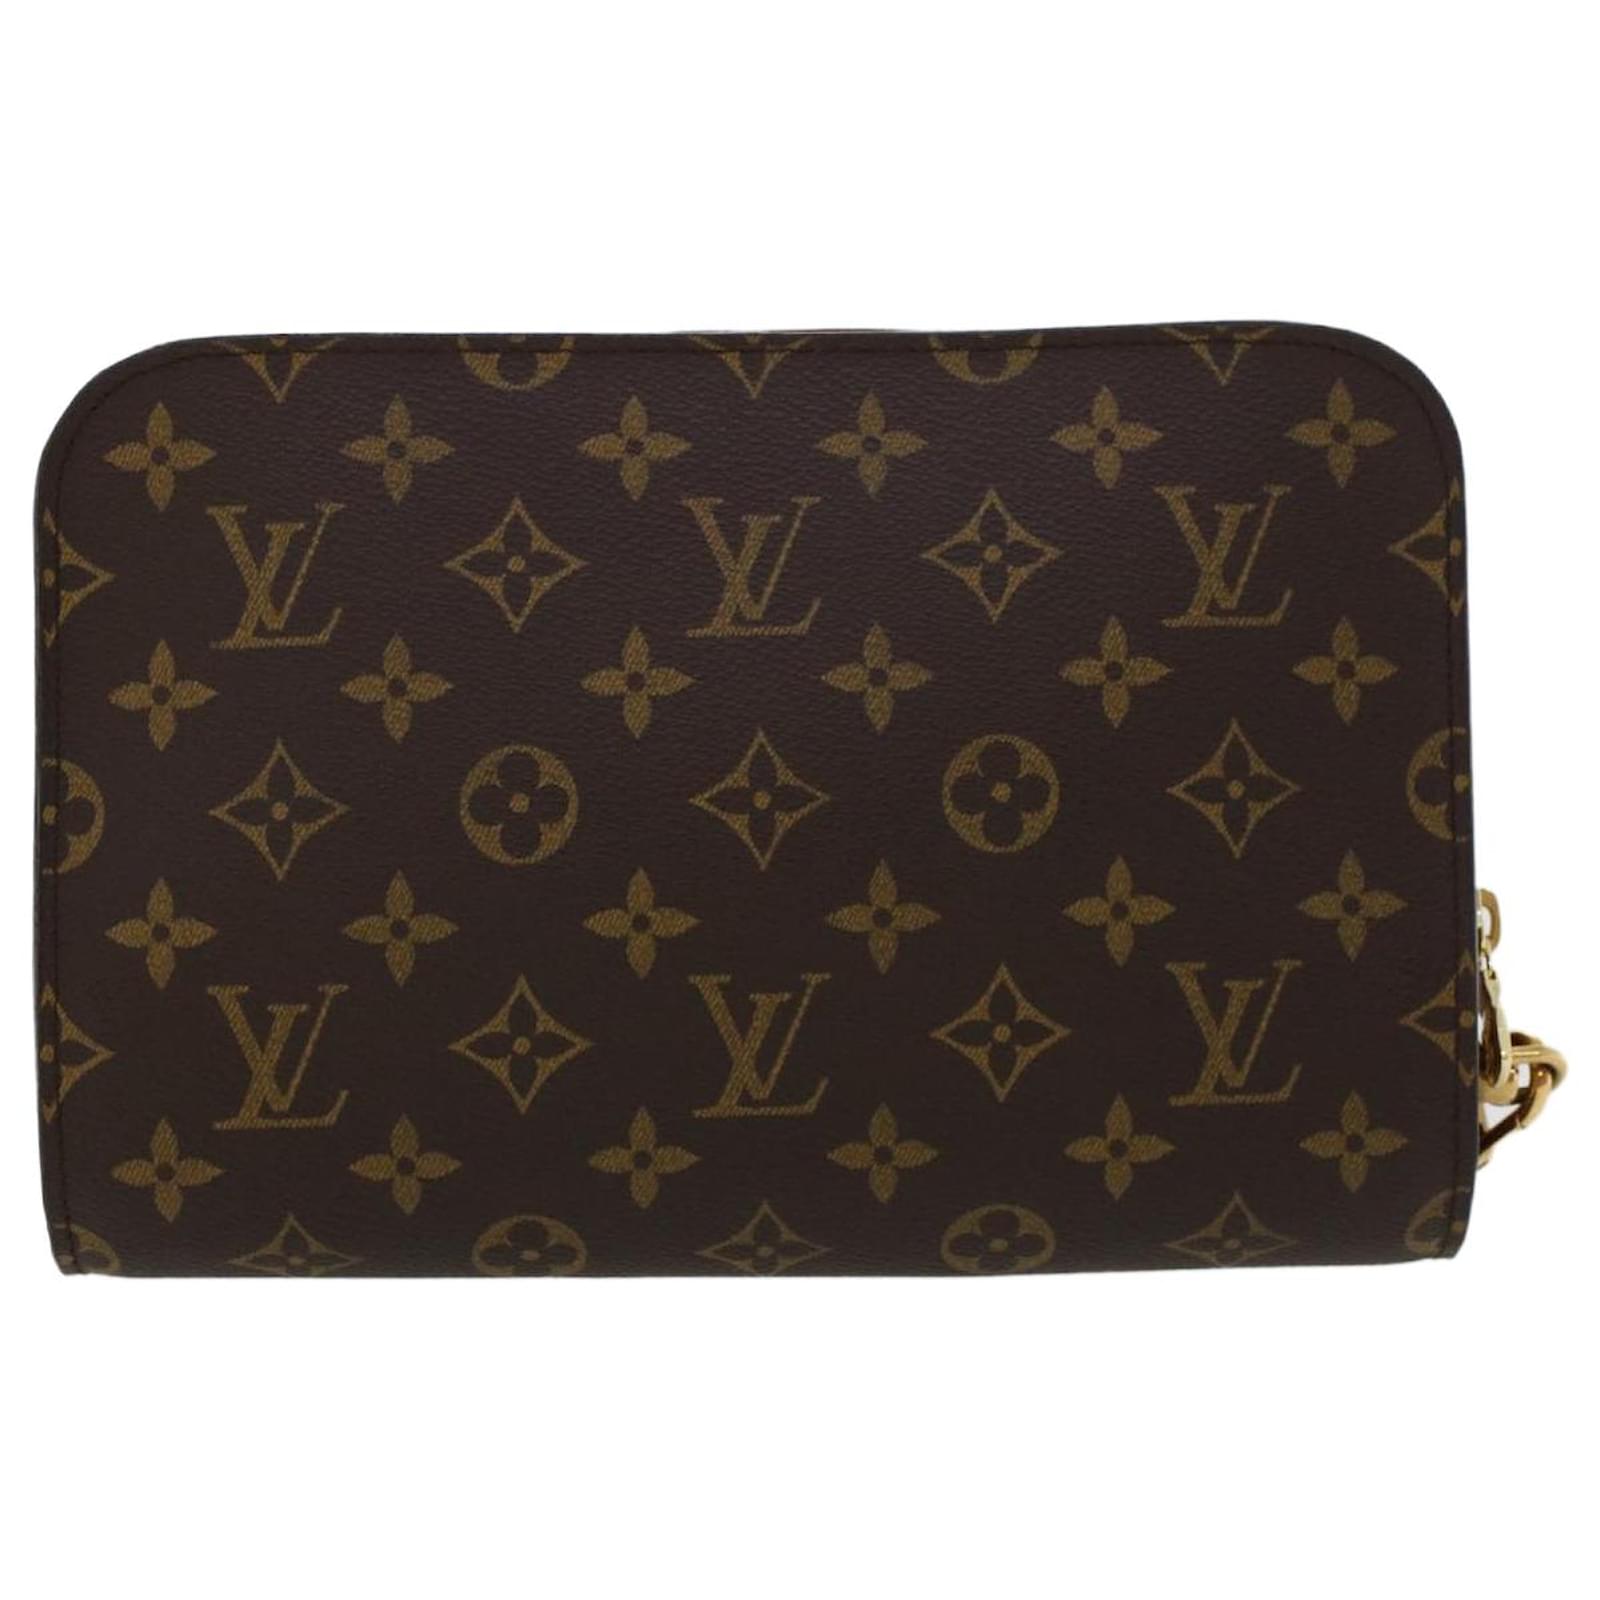 Authentic Louis Vuitton Monogram Compiegne 28 Clutch Bag, Men's